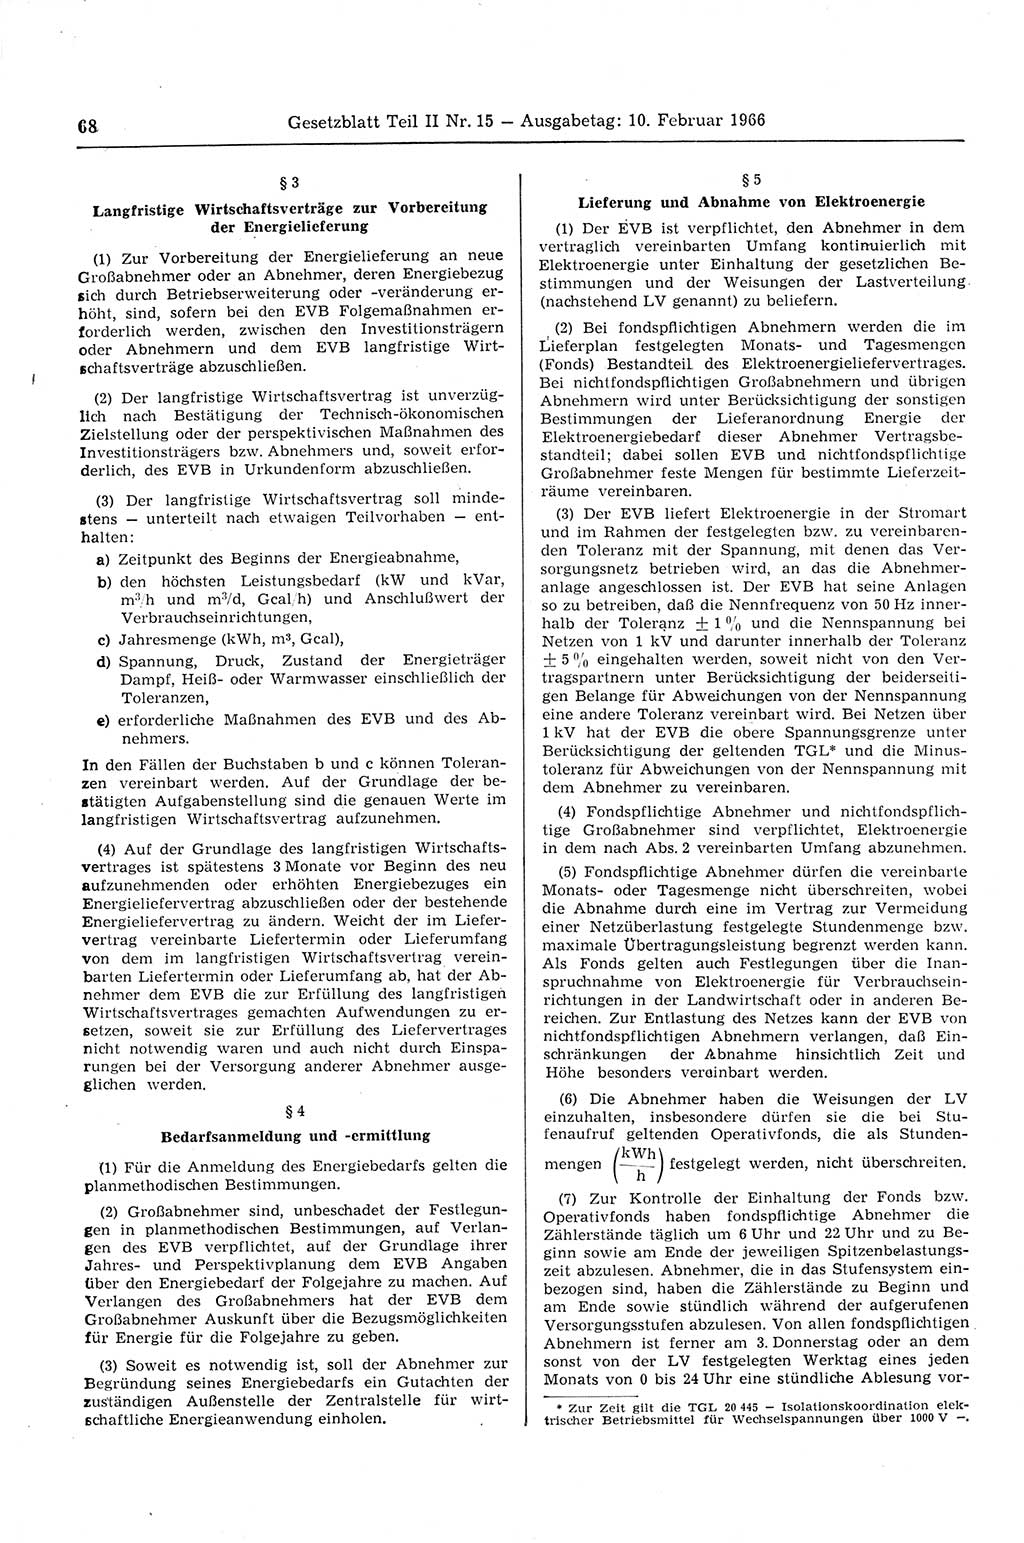 Gesetzblatt (GBl.) der Deutschen Demokratischen Republik (DDR) Teil ⅠⅠ 1966, Seite 68 (GBl. DDR ⅠⅠ 1966, S. 68)